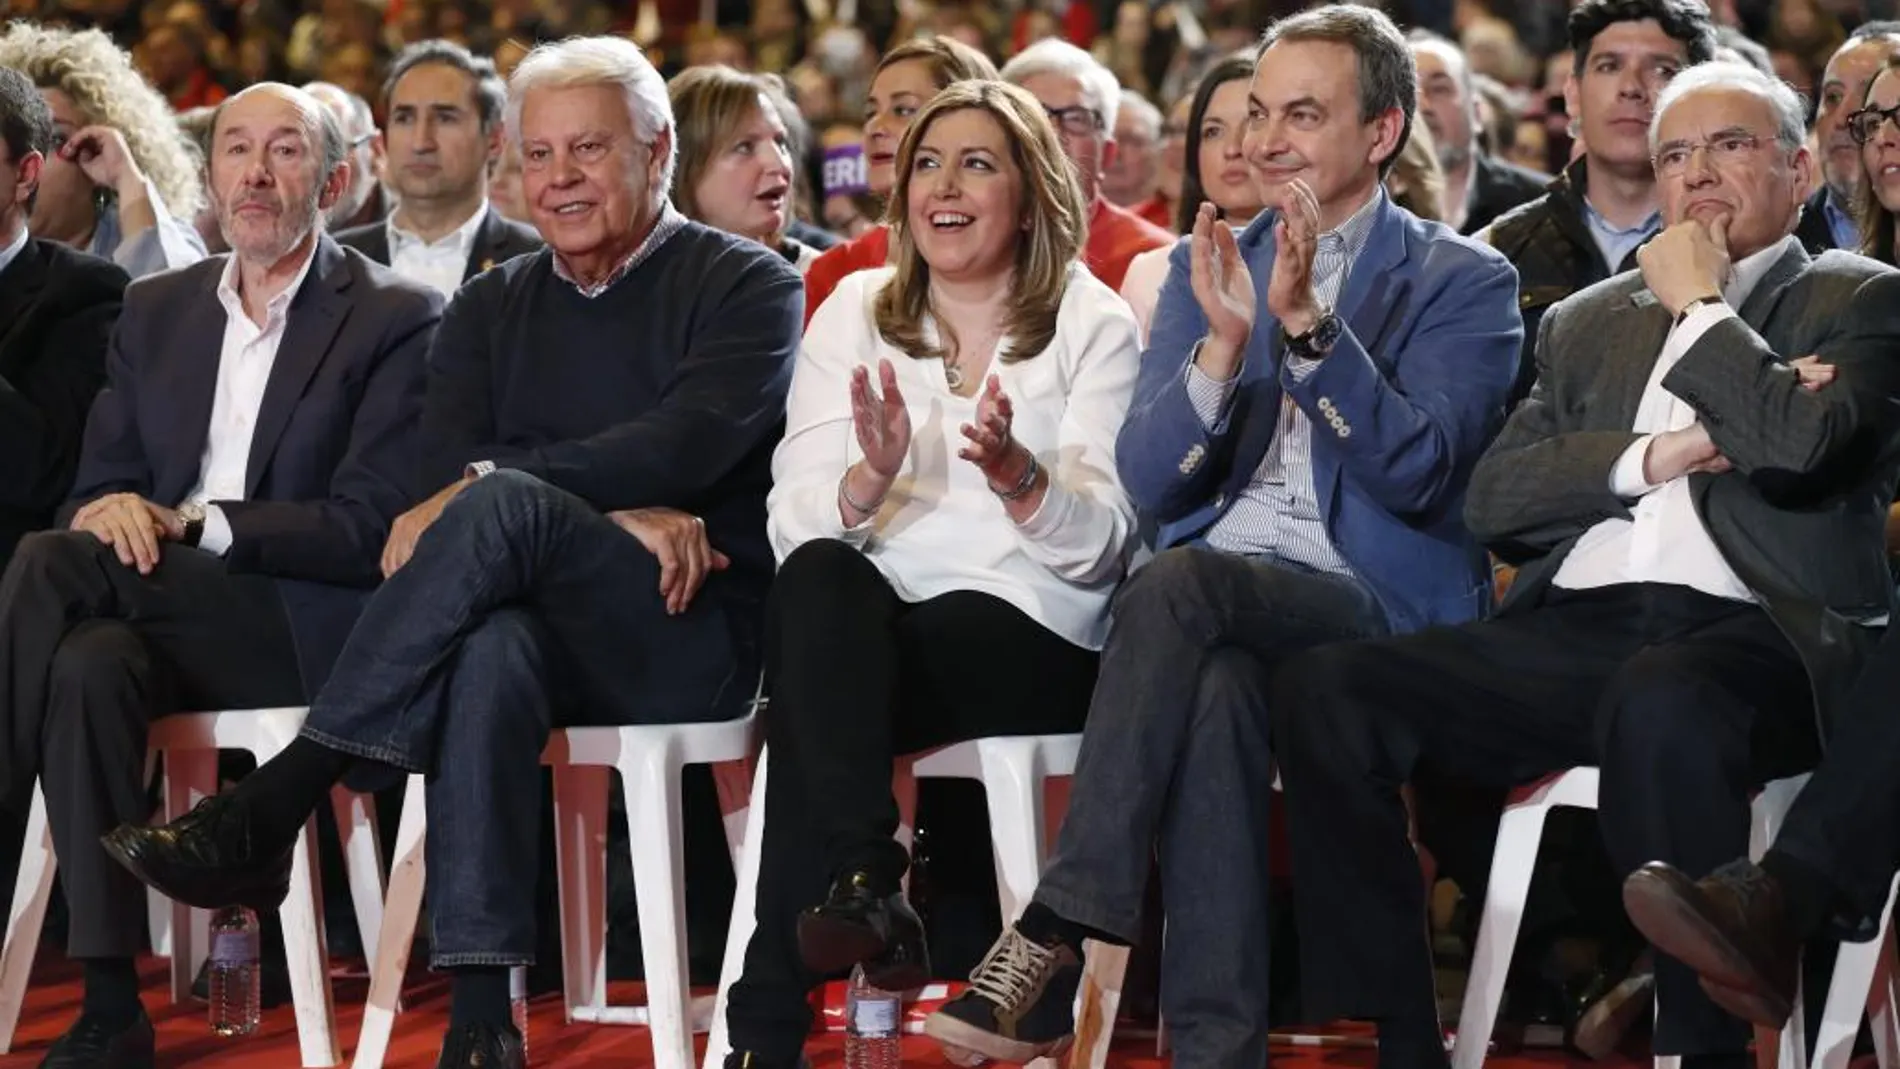 La presidenta de la Junta de Andalucía, Susana Díaz (3d), los expresidentes del Gobierno, Felipe González (2i) y José Luis Rodríguez Zapatero (2d), el exvicepresidente del Gobierno Alfonso Guerra (d), y el exsecretario general del PSOE Alfredo Pérez Rubalcaba